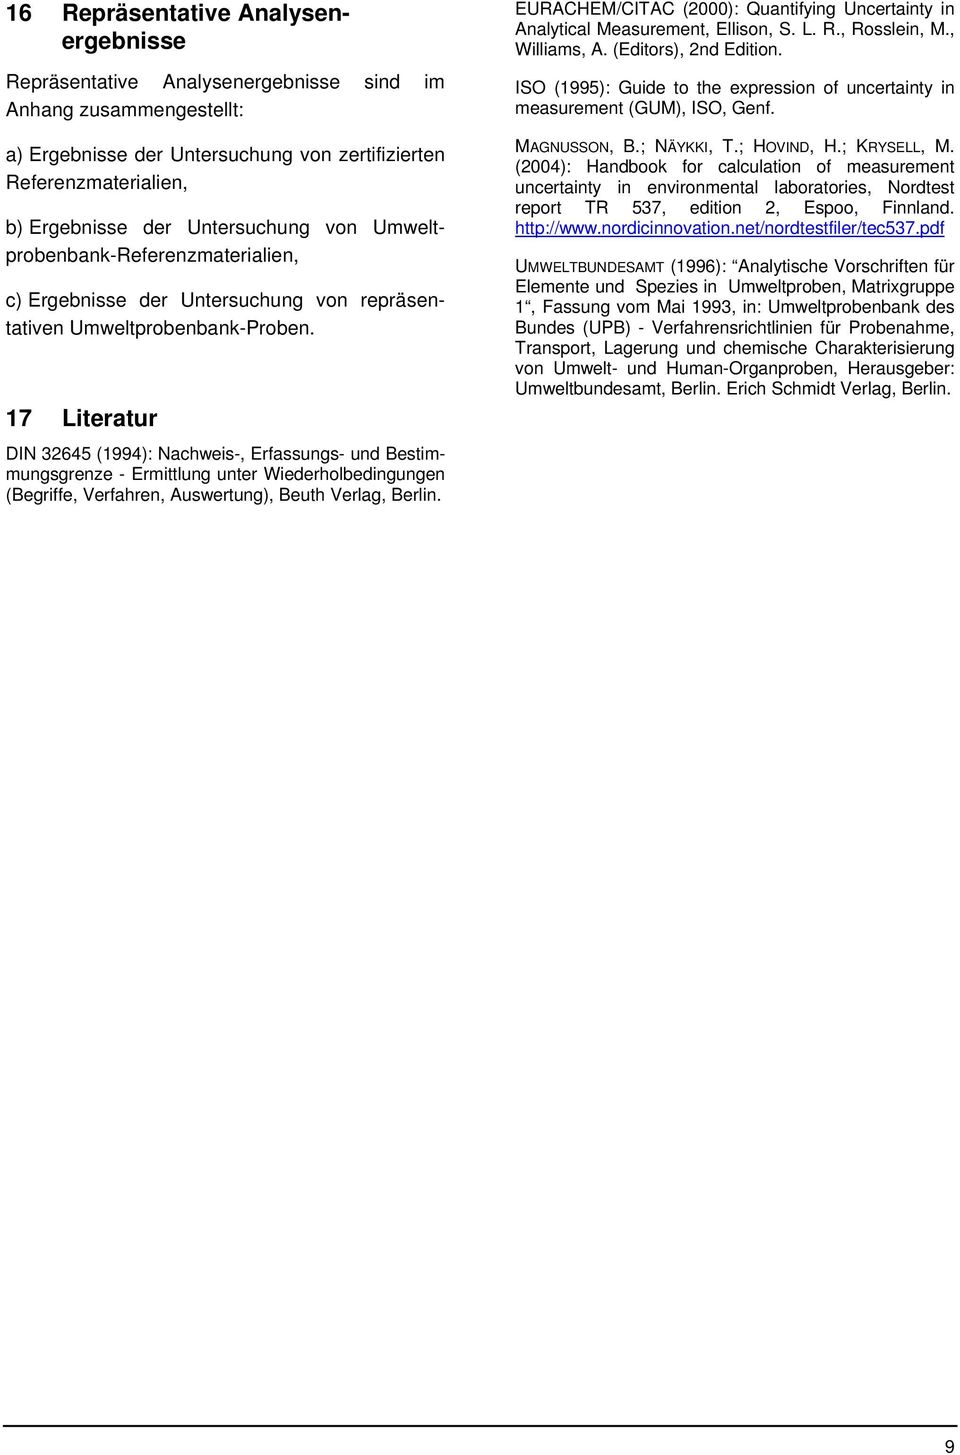 17 Literatur DIN 32645 (1994): Nachweis-, Erfassungs- und Bestimmungsgrenze - Ermittlung unter Wiederholbedingungen (Begriffe, Verfahren, Auswertung), Beuth Verlag, Berlin.